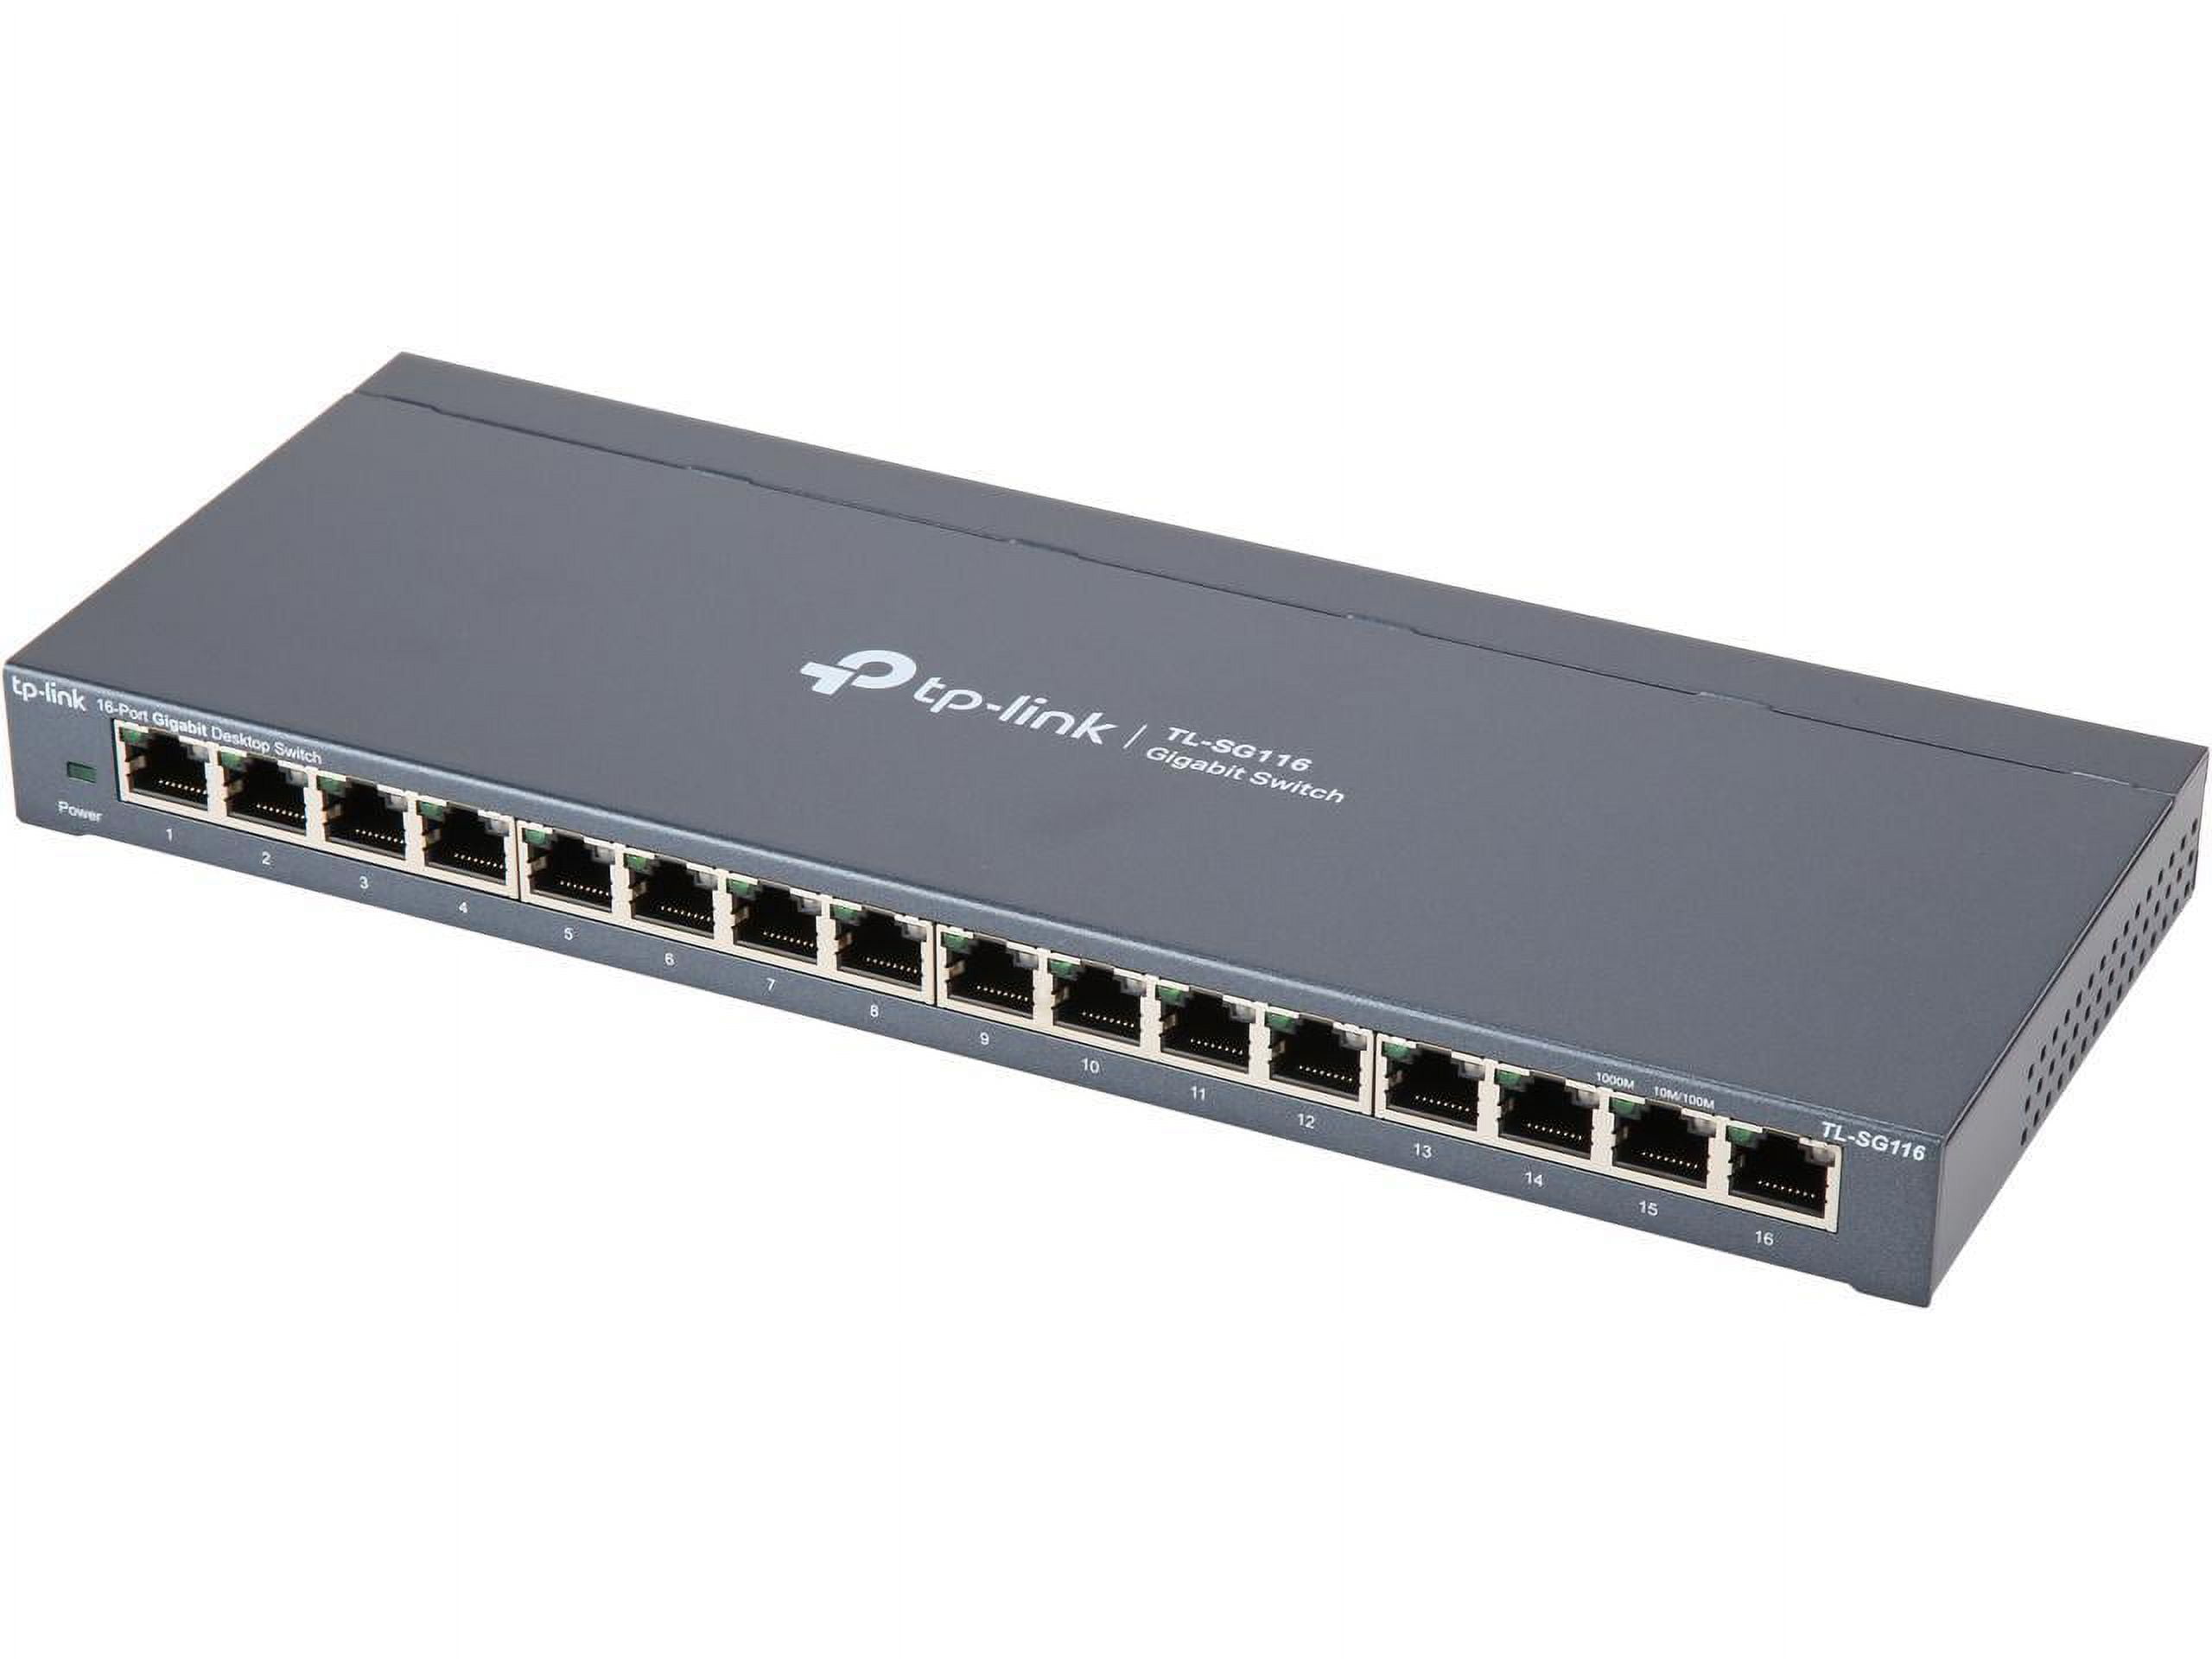 TP-Link 8 Port Gigabit Ethernet Network Switch Ethernet Splitter Sturdy  Metal w/ Shielded Ports Plug-and-Play (TL-SG108) Manufacturer Refurbished